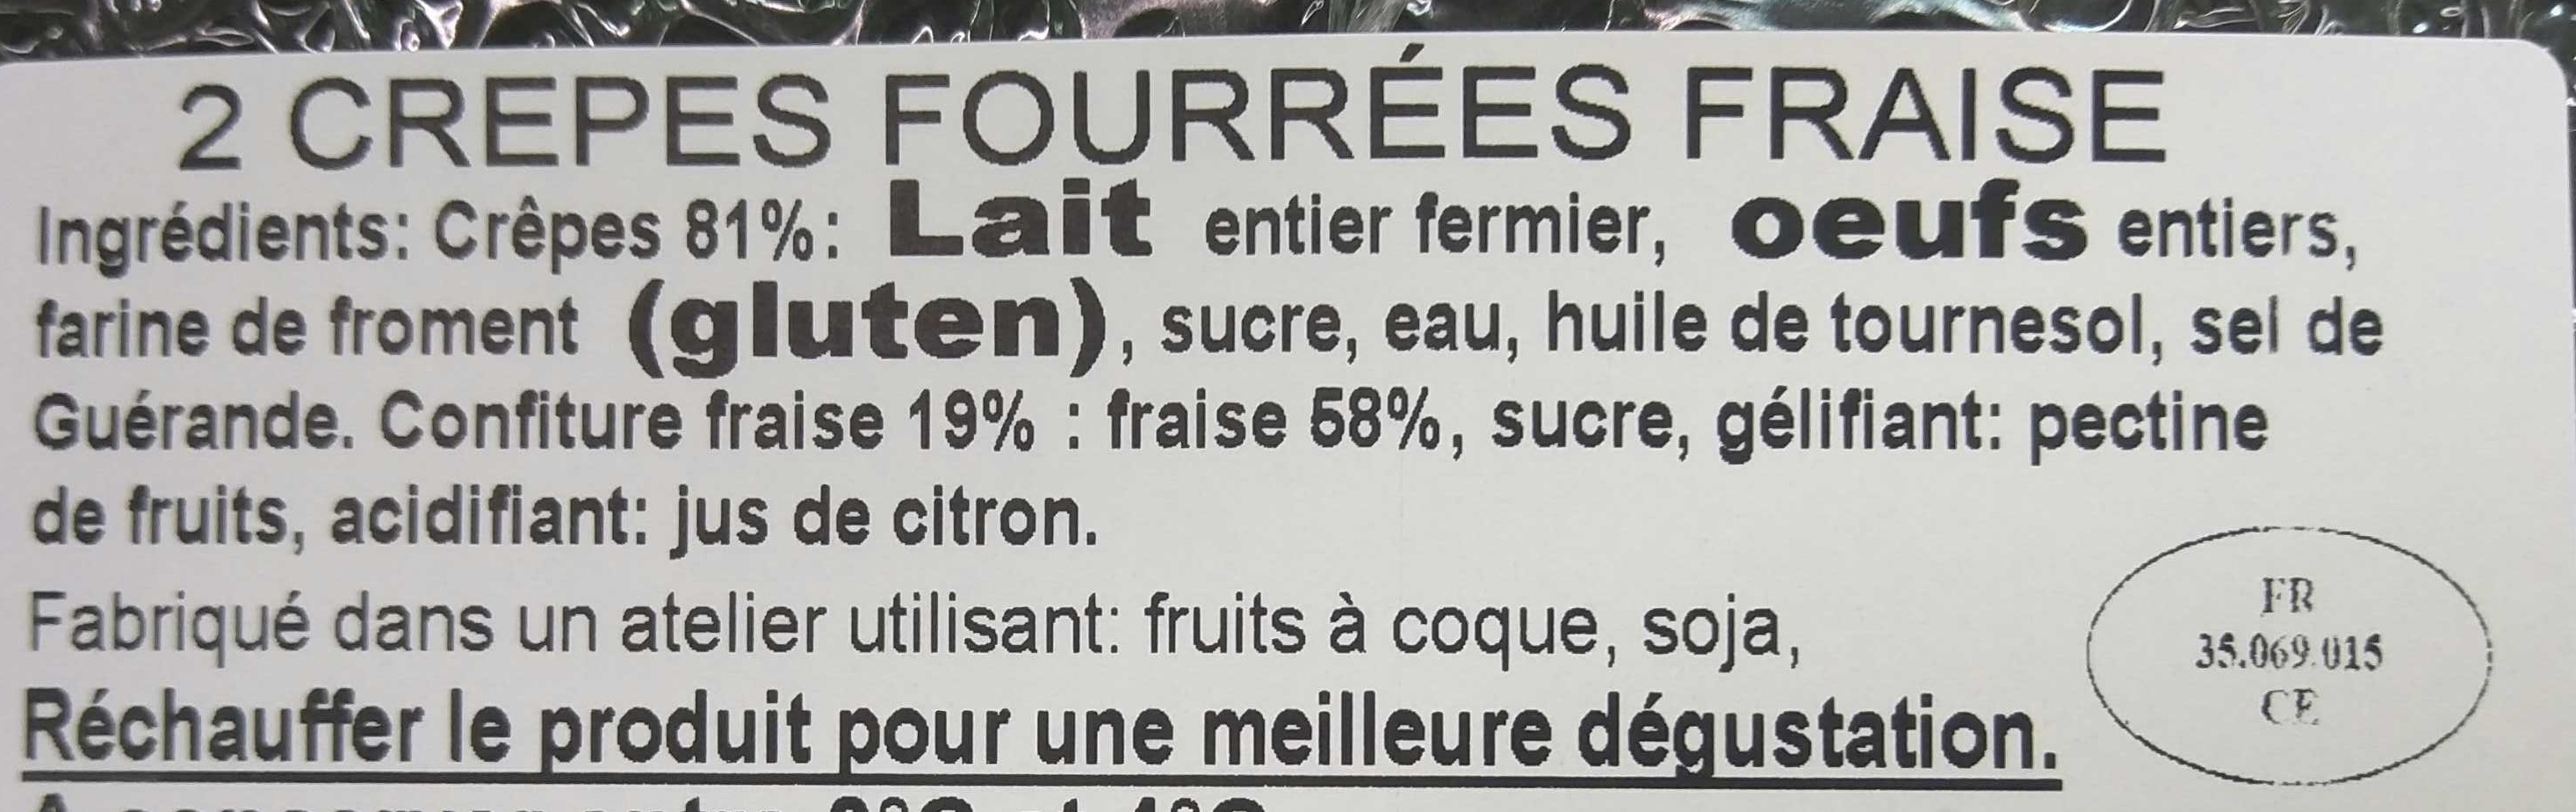 Crêpes Fraise - Ingredients - fr